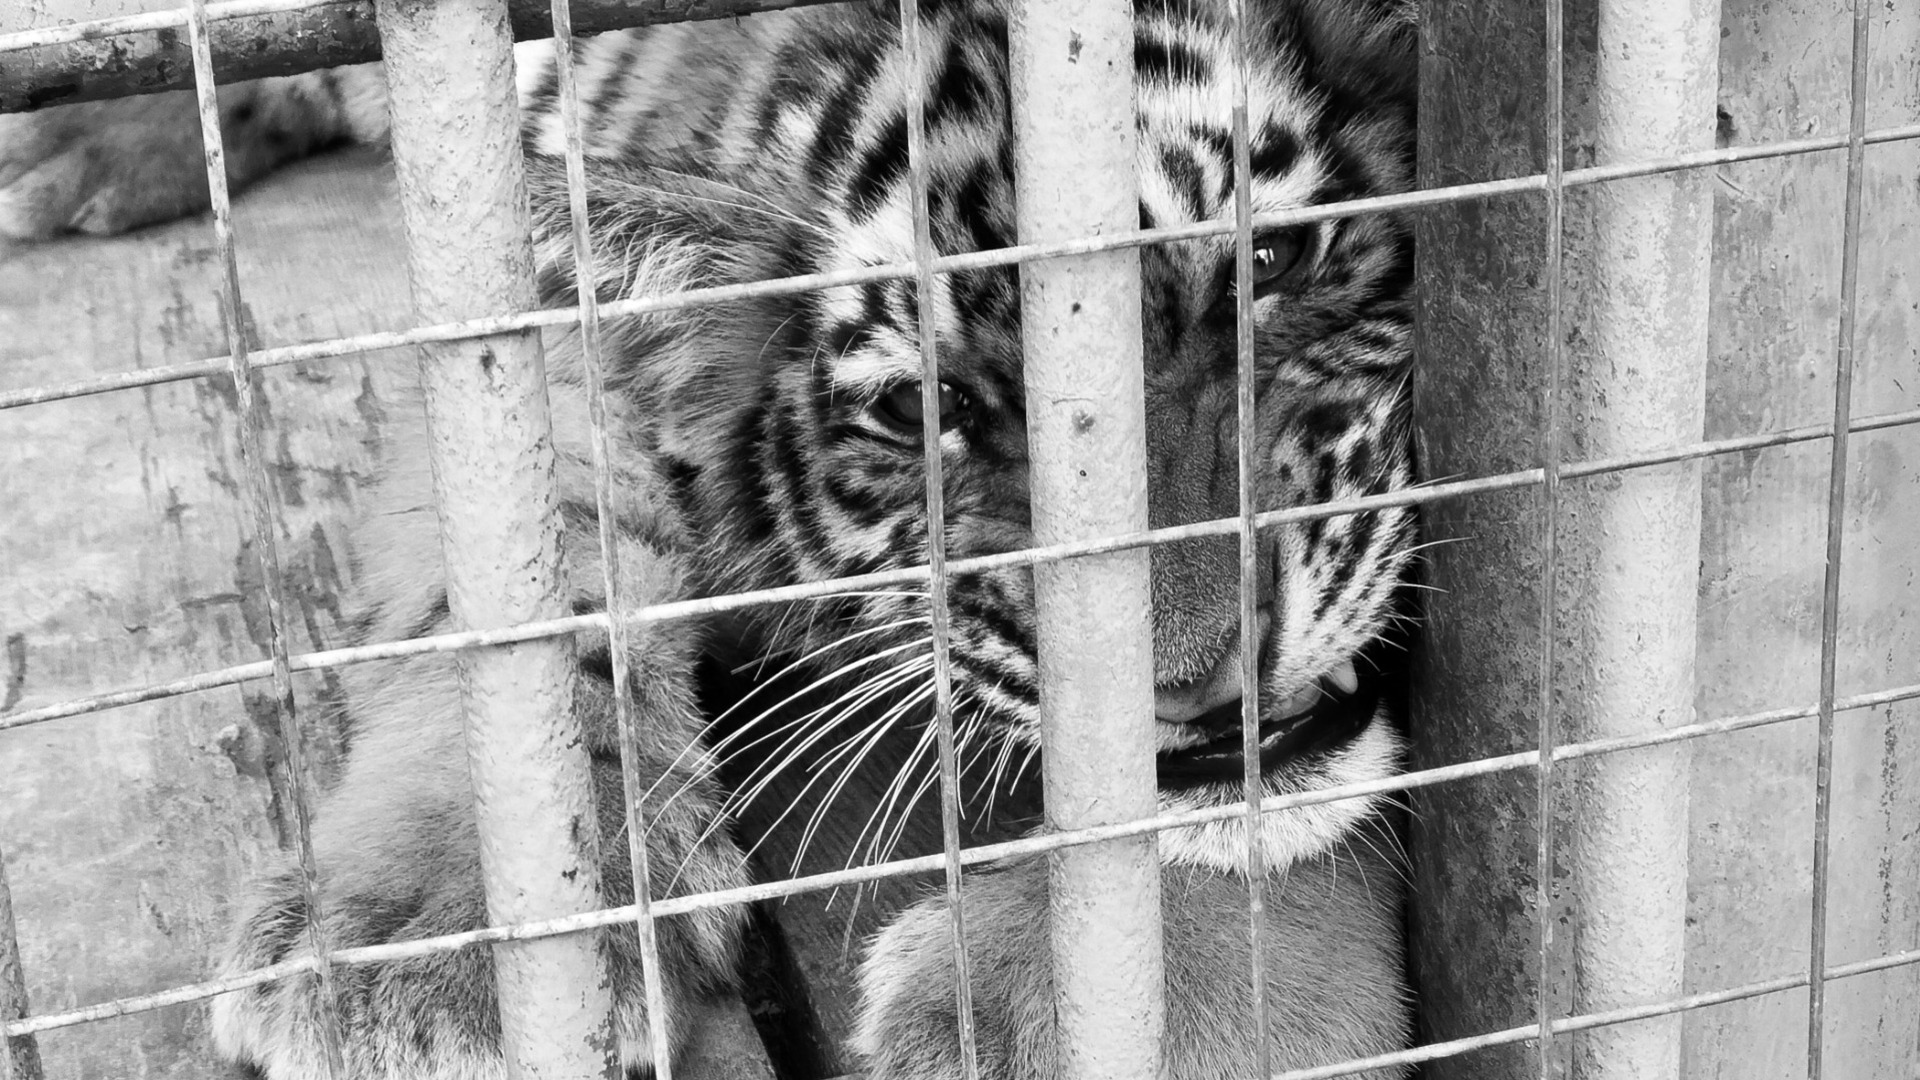 Обнаружен хромой тигр возле села Беневское в Приморском крае — видео